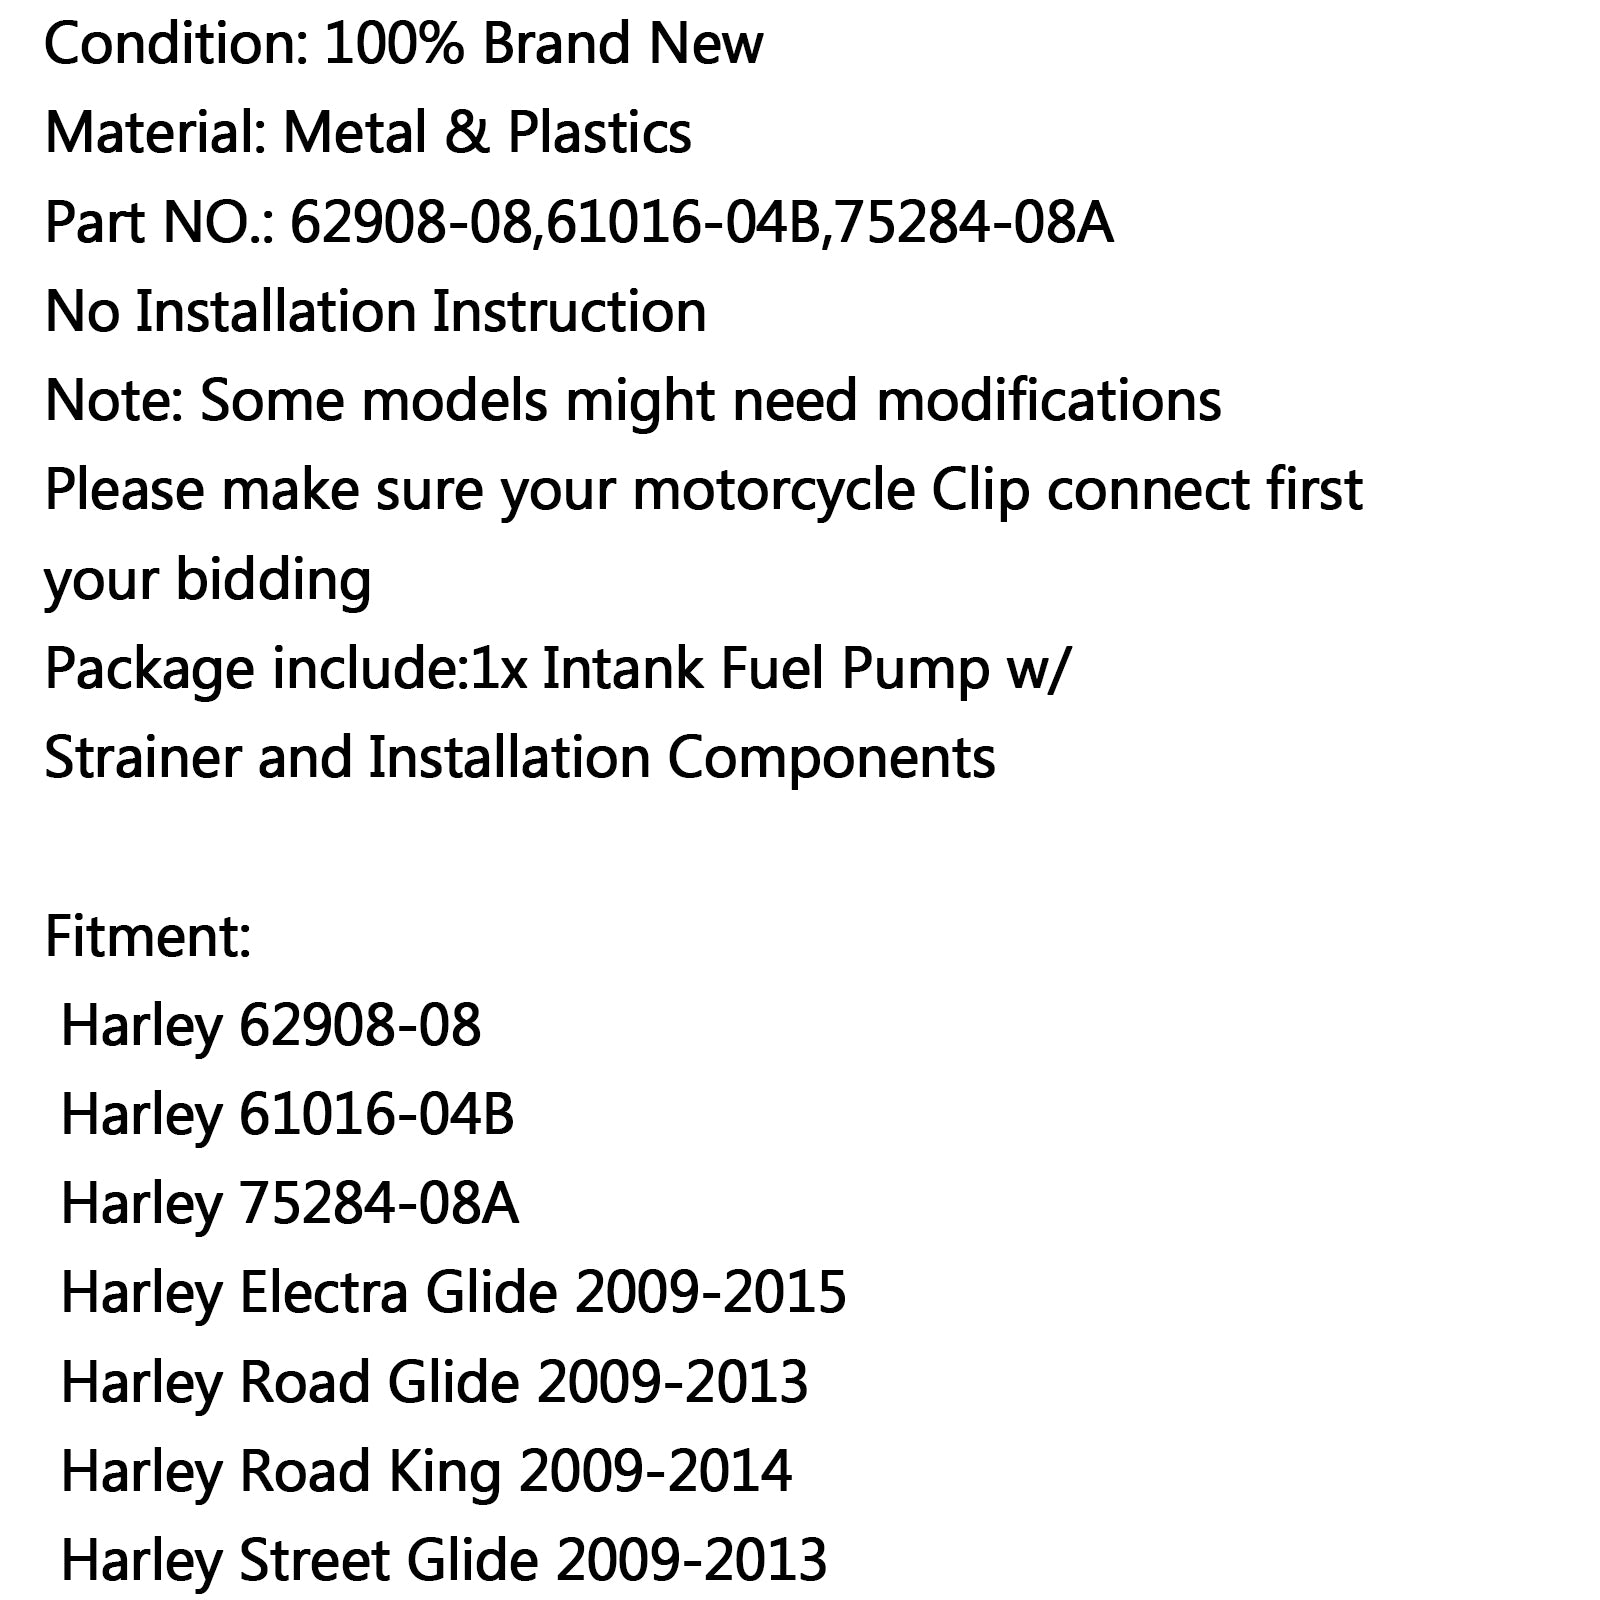 New Fuel Pump For Harley 62908-08 Road King Street Glide Softai Fatboy Dyna 2004